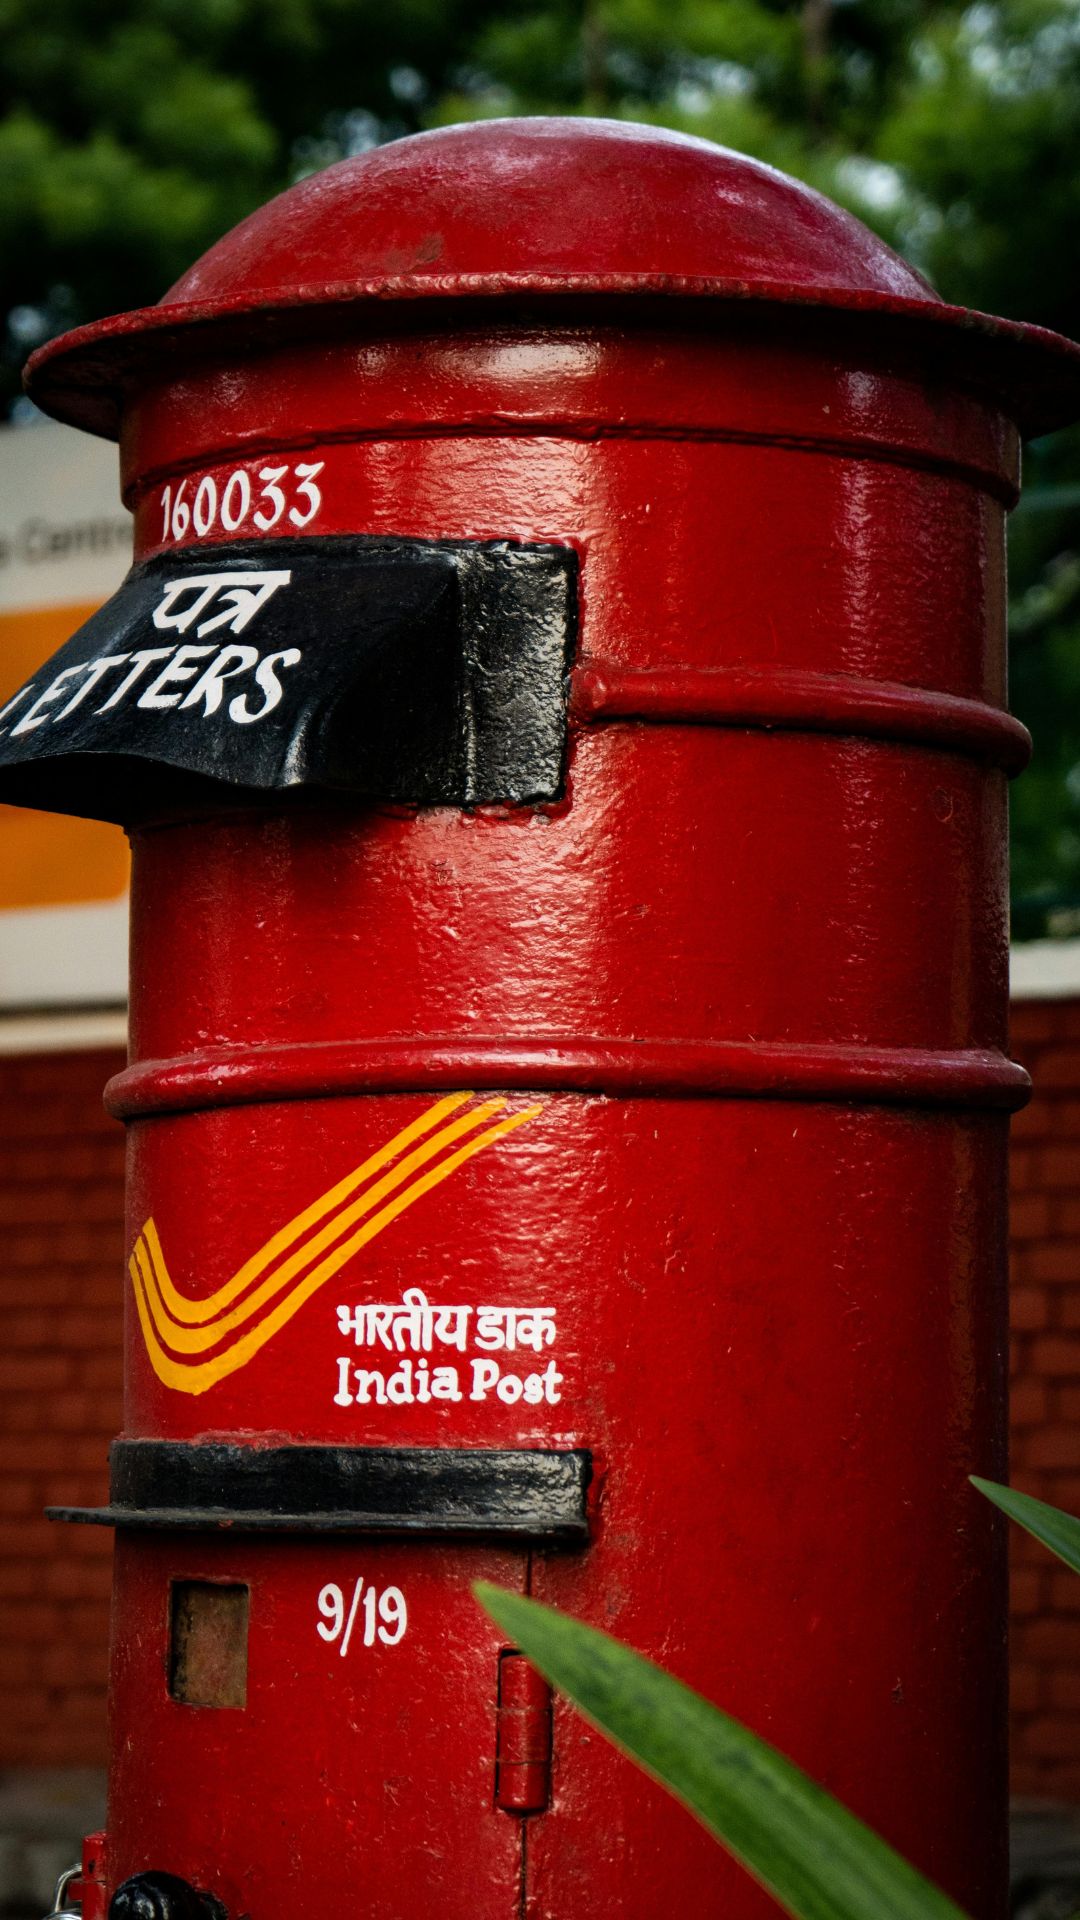 Post Office की NSC स्कीम में 10,000 रुपये निवेश करने पर कितना मिलेगा रिटर्न? समझें कैलकुलेशन